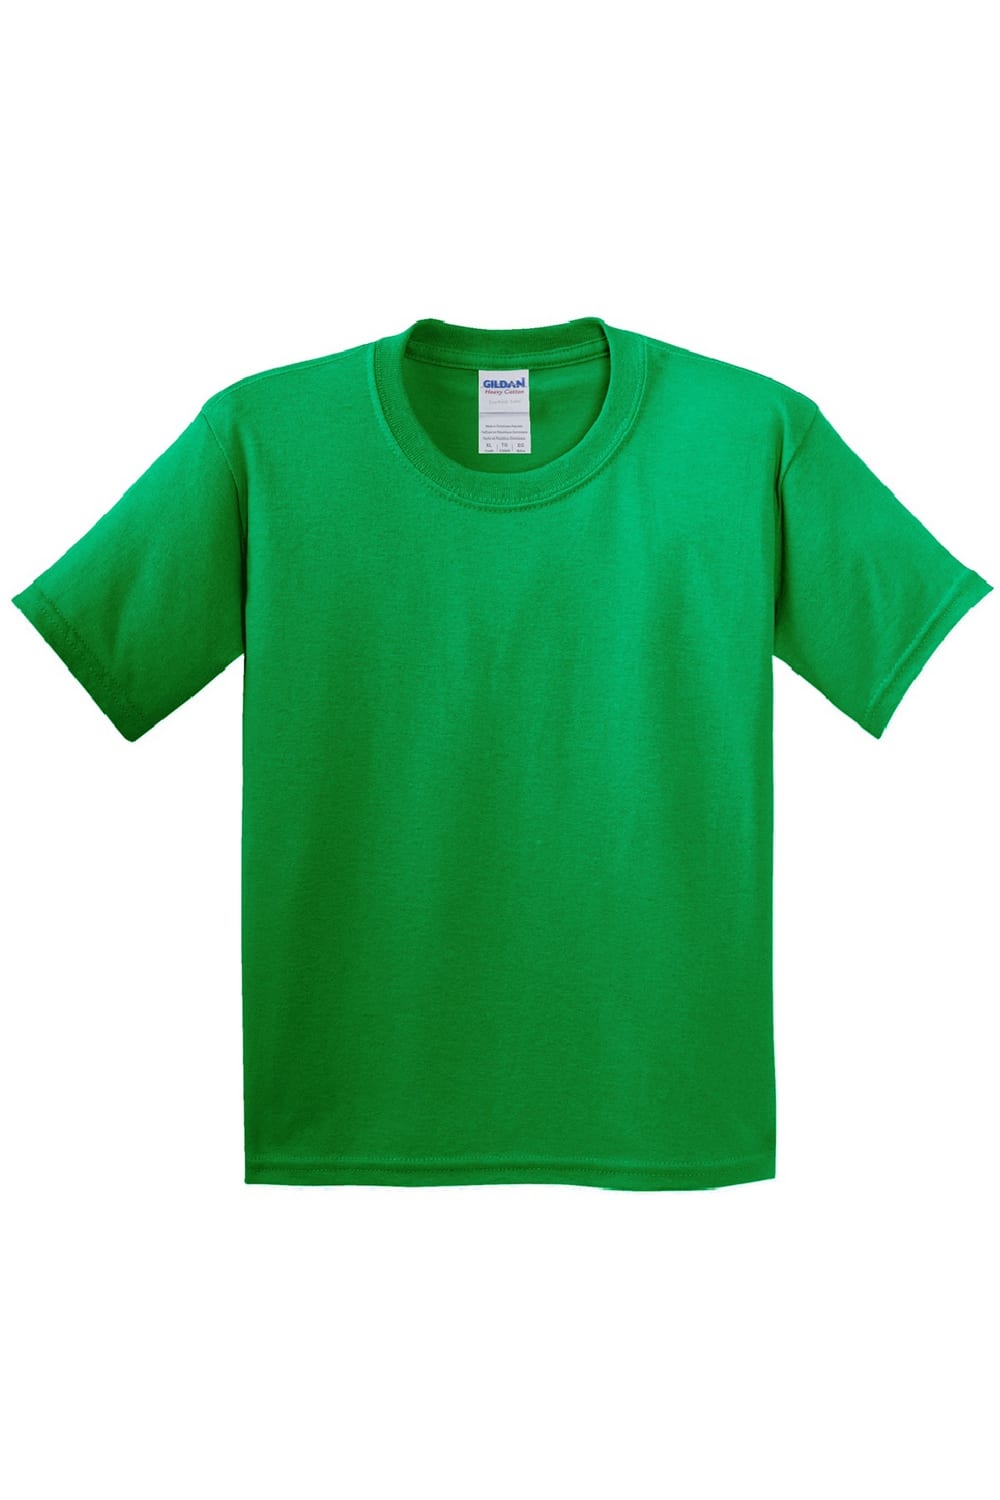 Childrens Unisex Heavy Cotton T-Shirt (Pack Of 2) - Irish Green